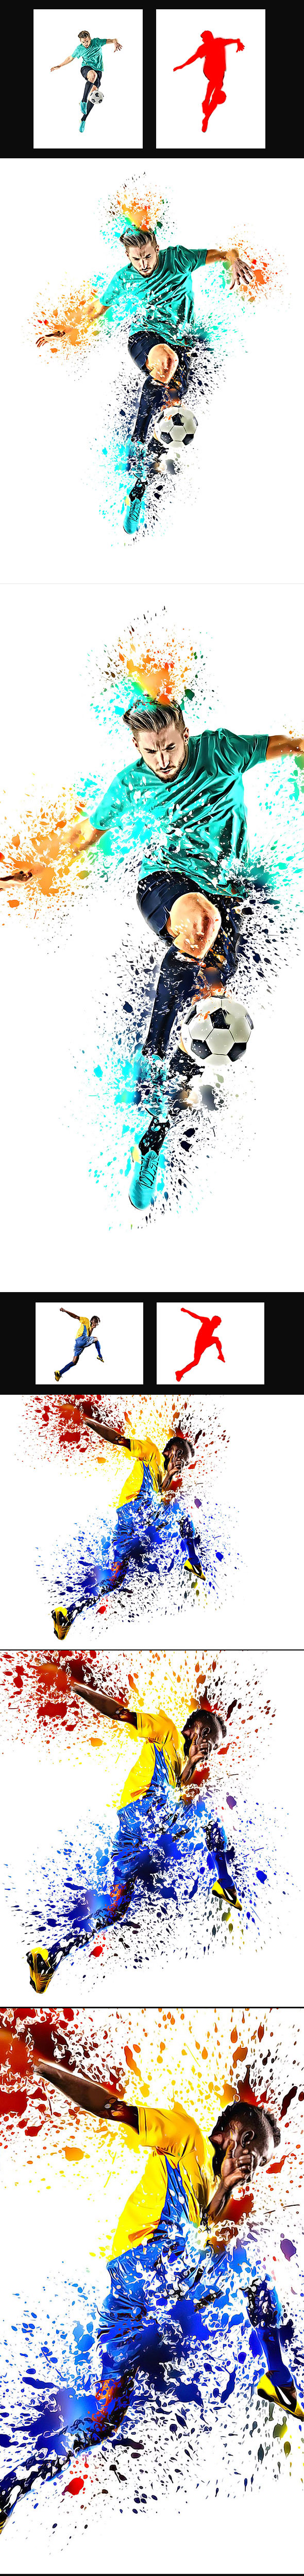 飞溅水彩艺术效果的PS动作下载 Splatter Art Photoshop Action [atn]插图(1)